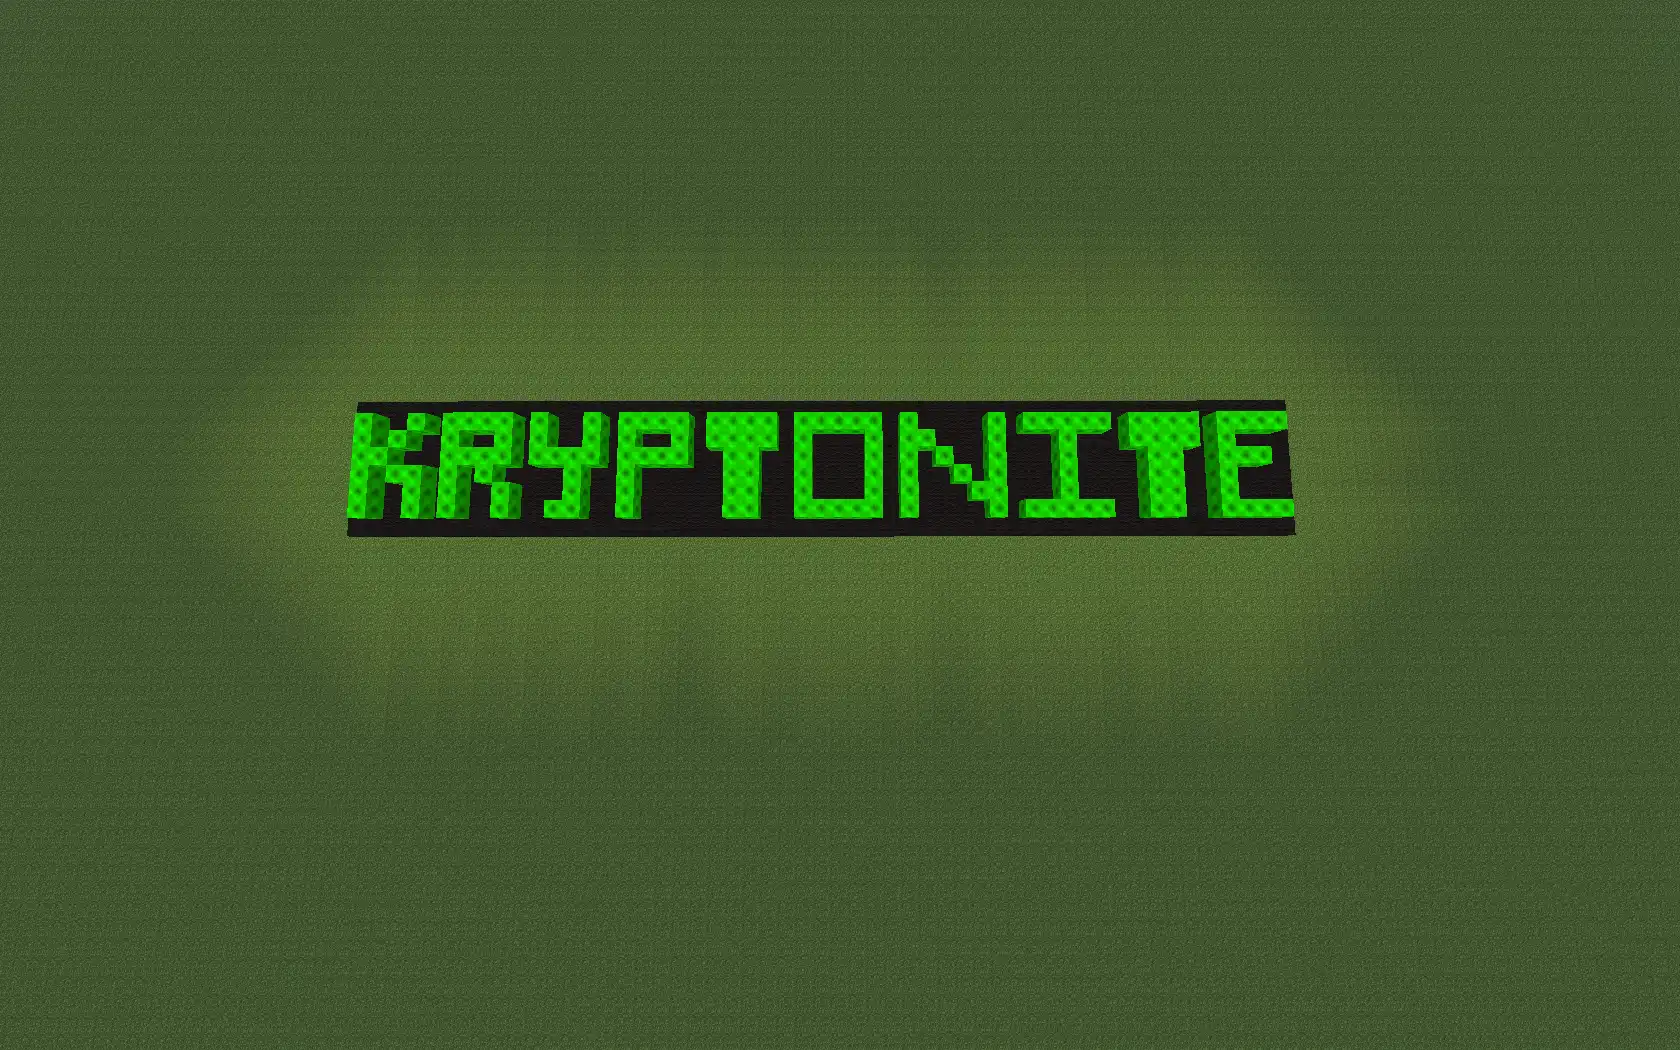 הורד את כלי האינטרנט או את אפליקציית האינטרנט Kryptonite Mod להפעלה בלינוקס באופן מקוון